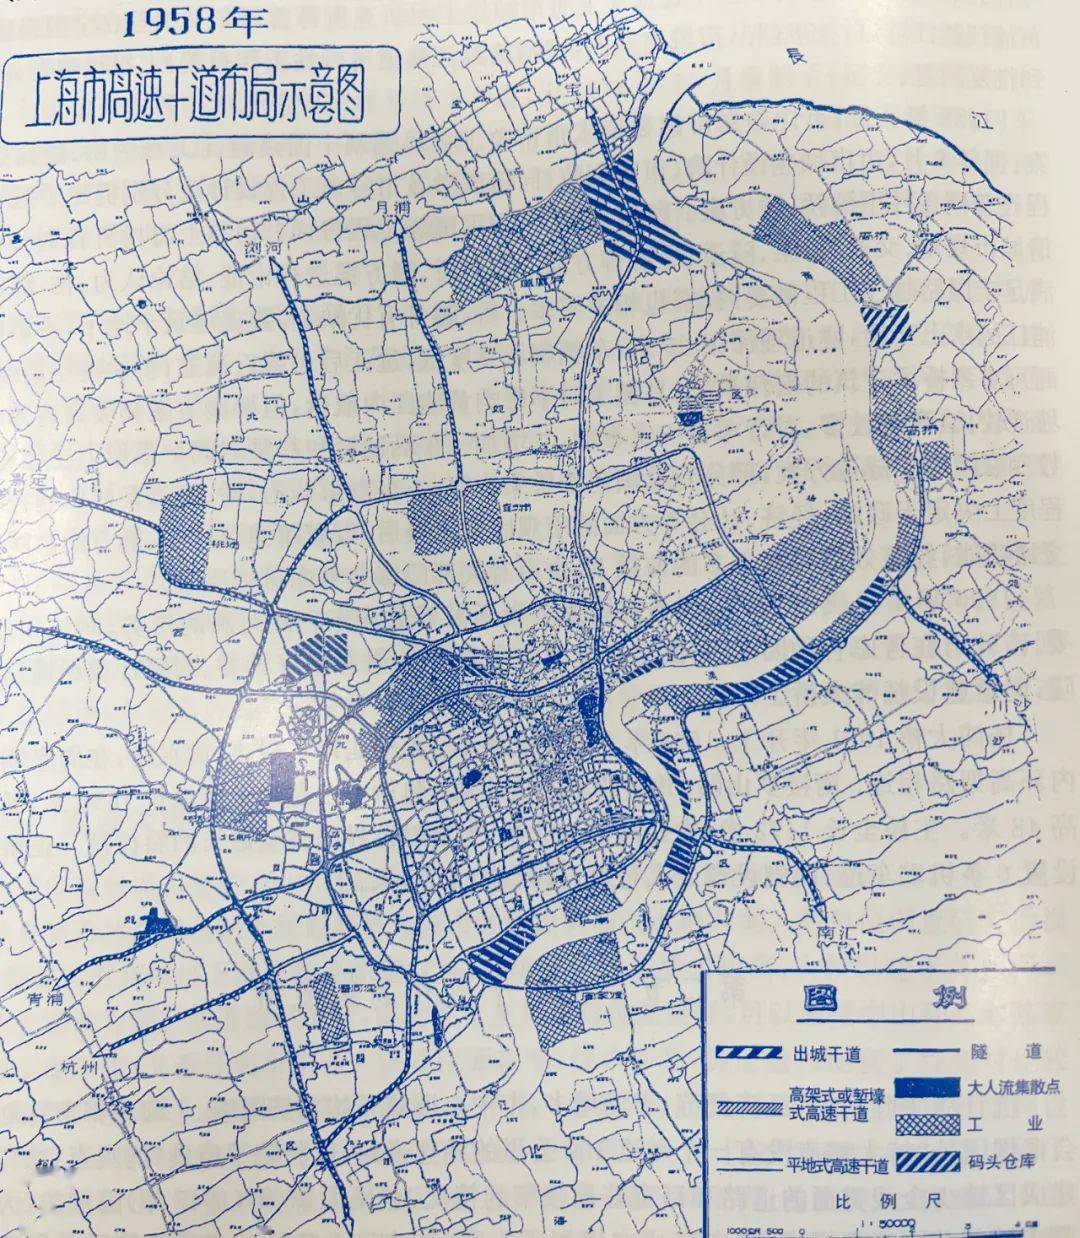 1958年,上海市高速干道布局示意图中的"内环线"